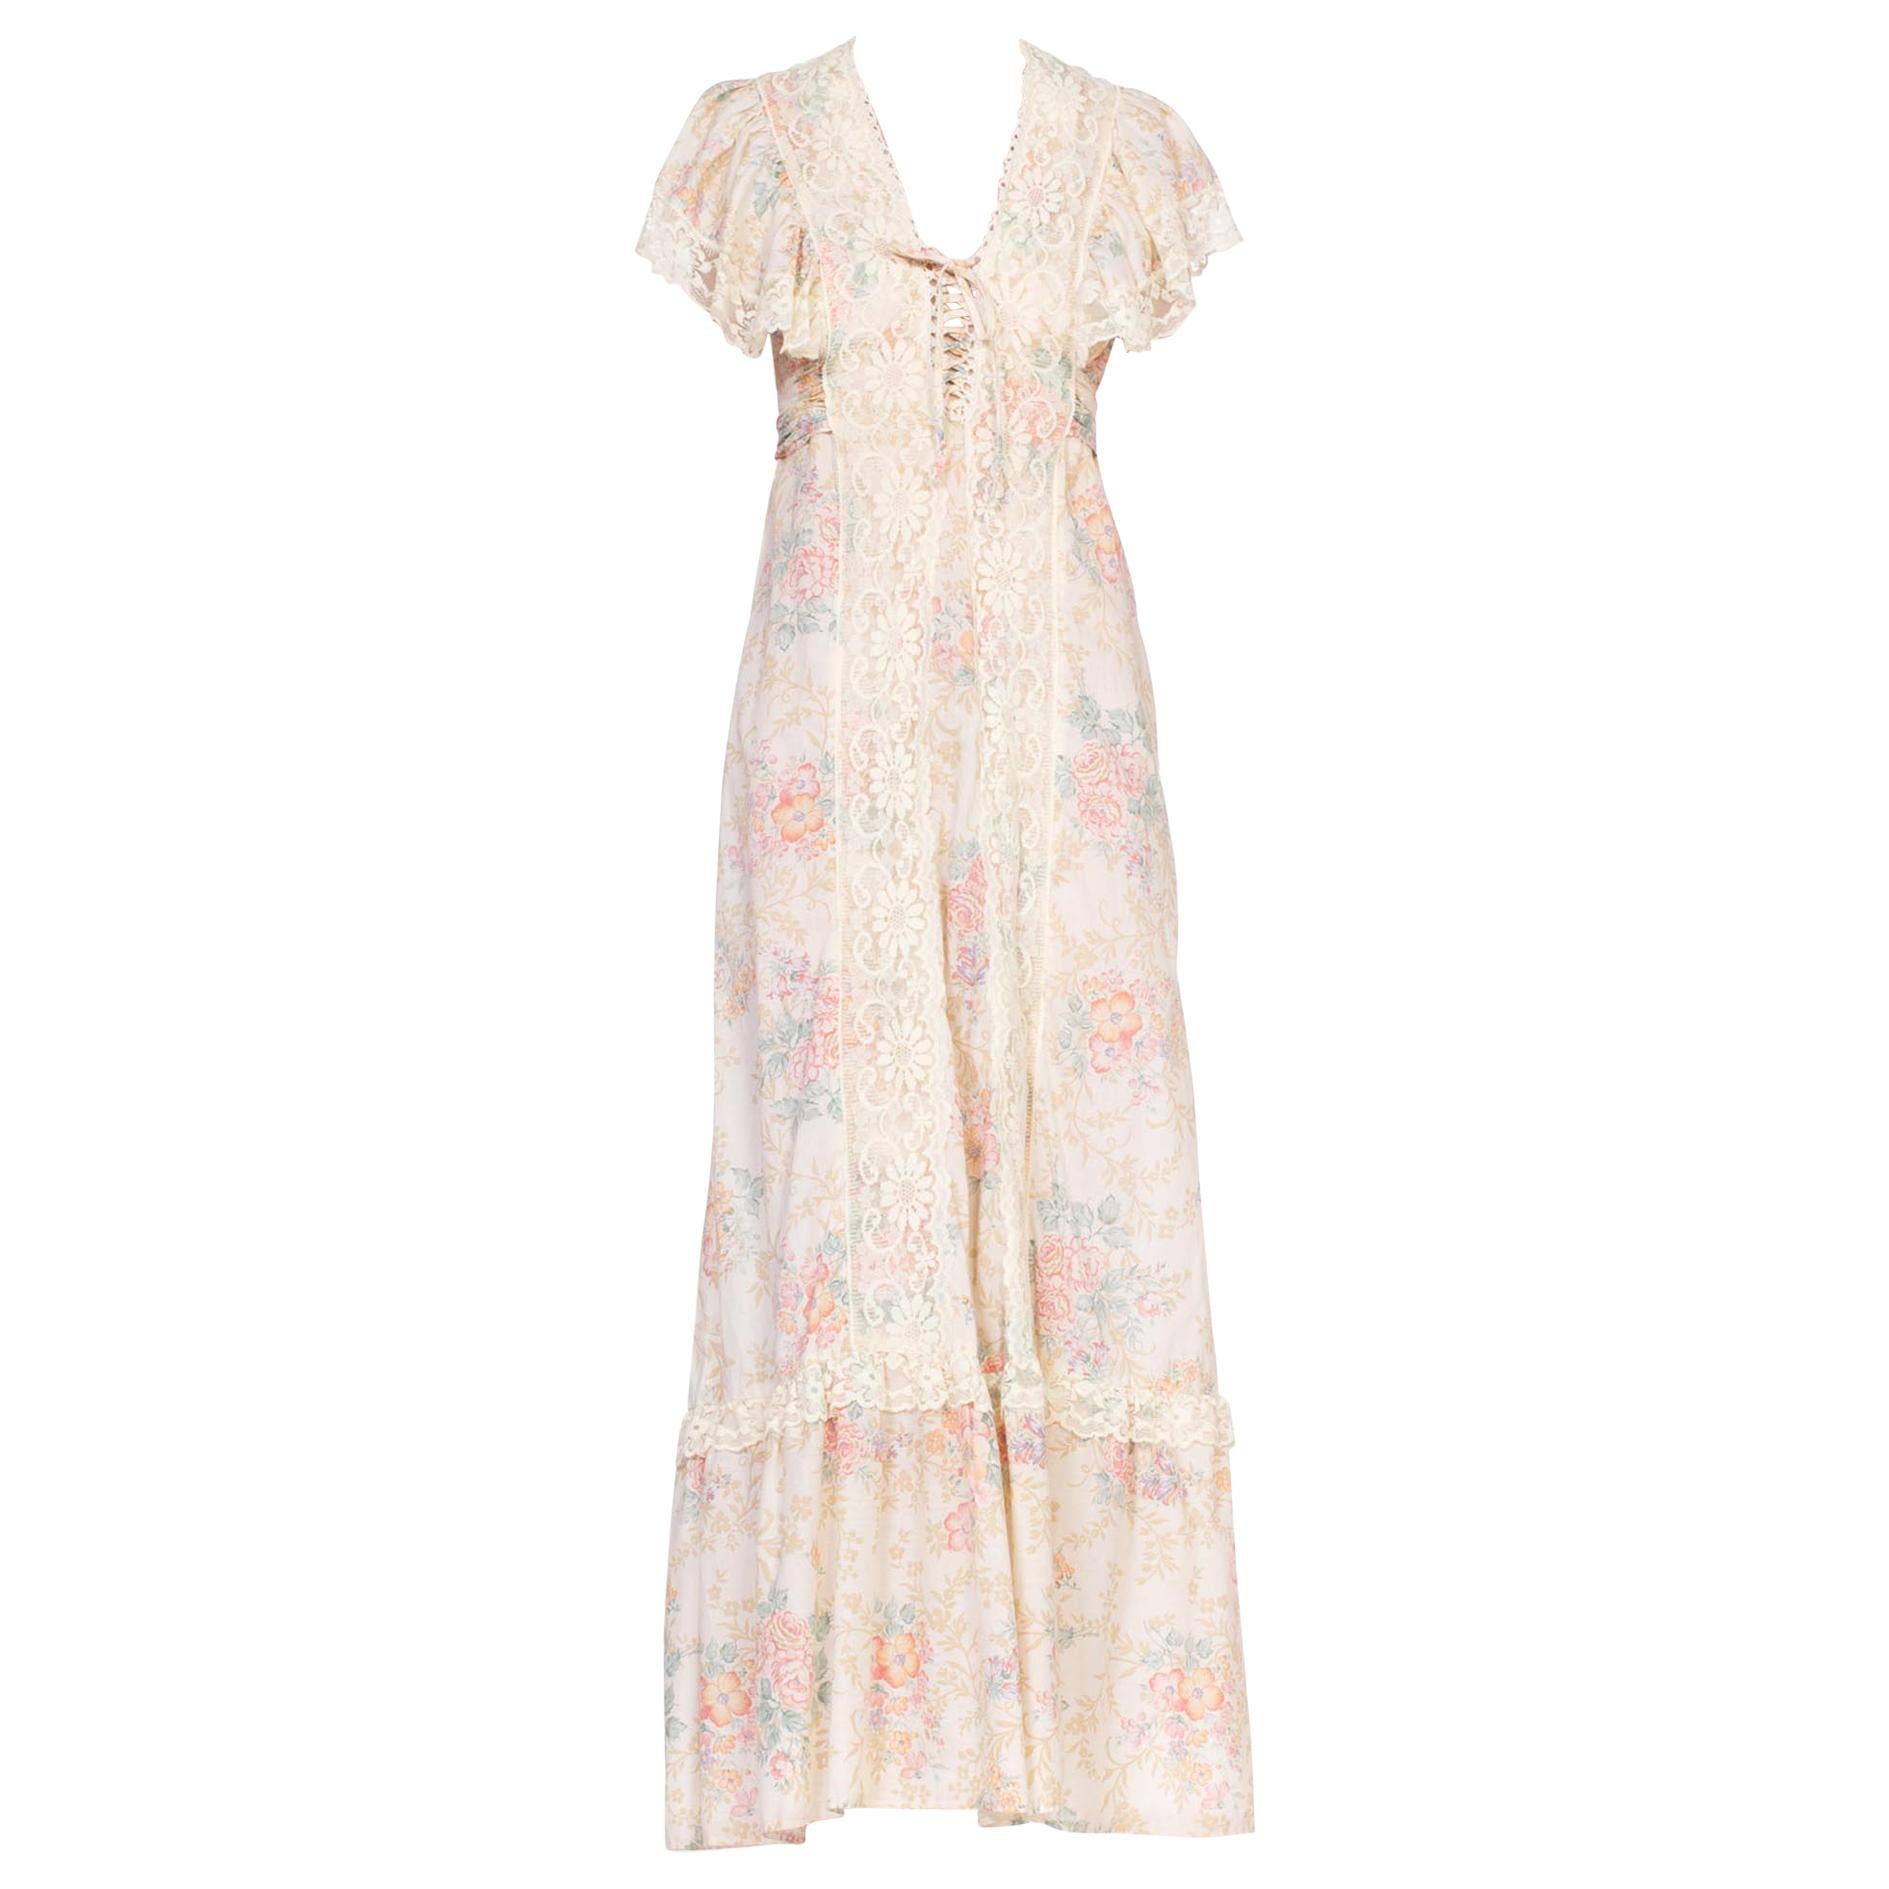 1970's Victorian Floral Cotton & Lace Dress